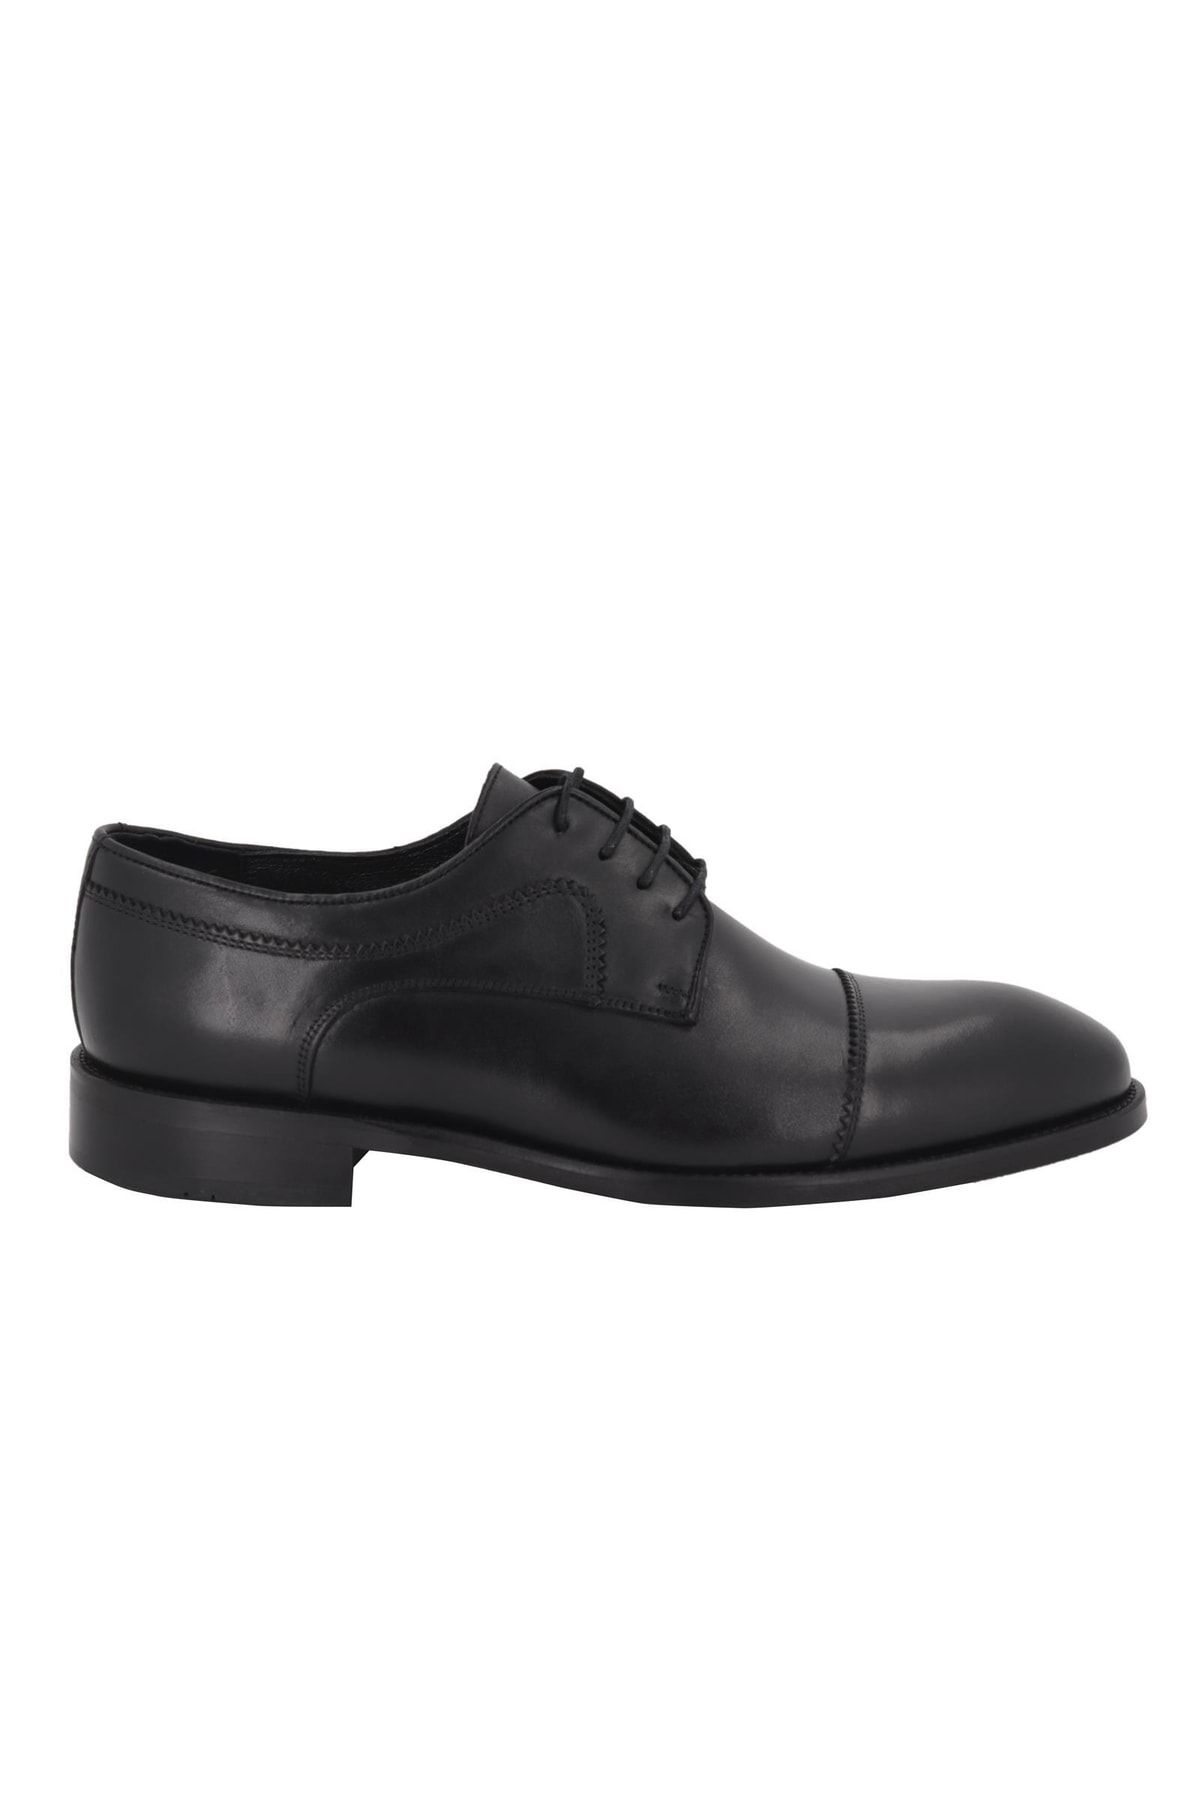 Hobby 2349203 Deri Klasik Erkek Ayakkabı Modeli